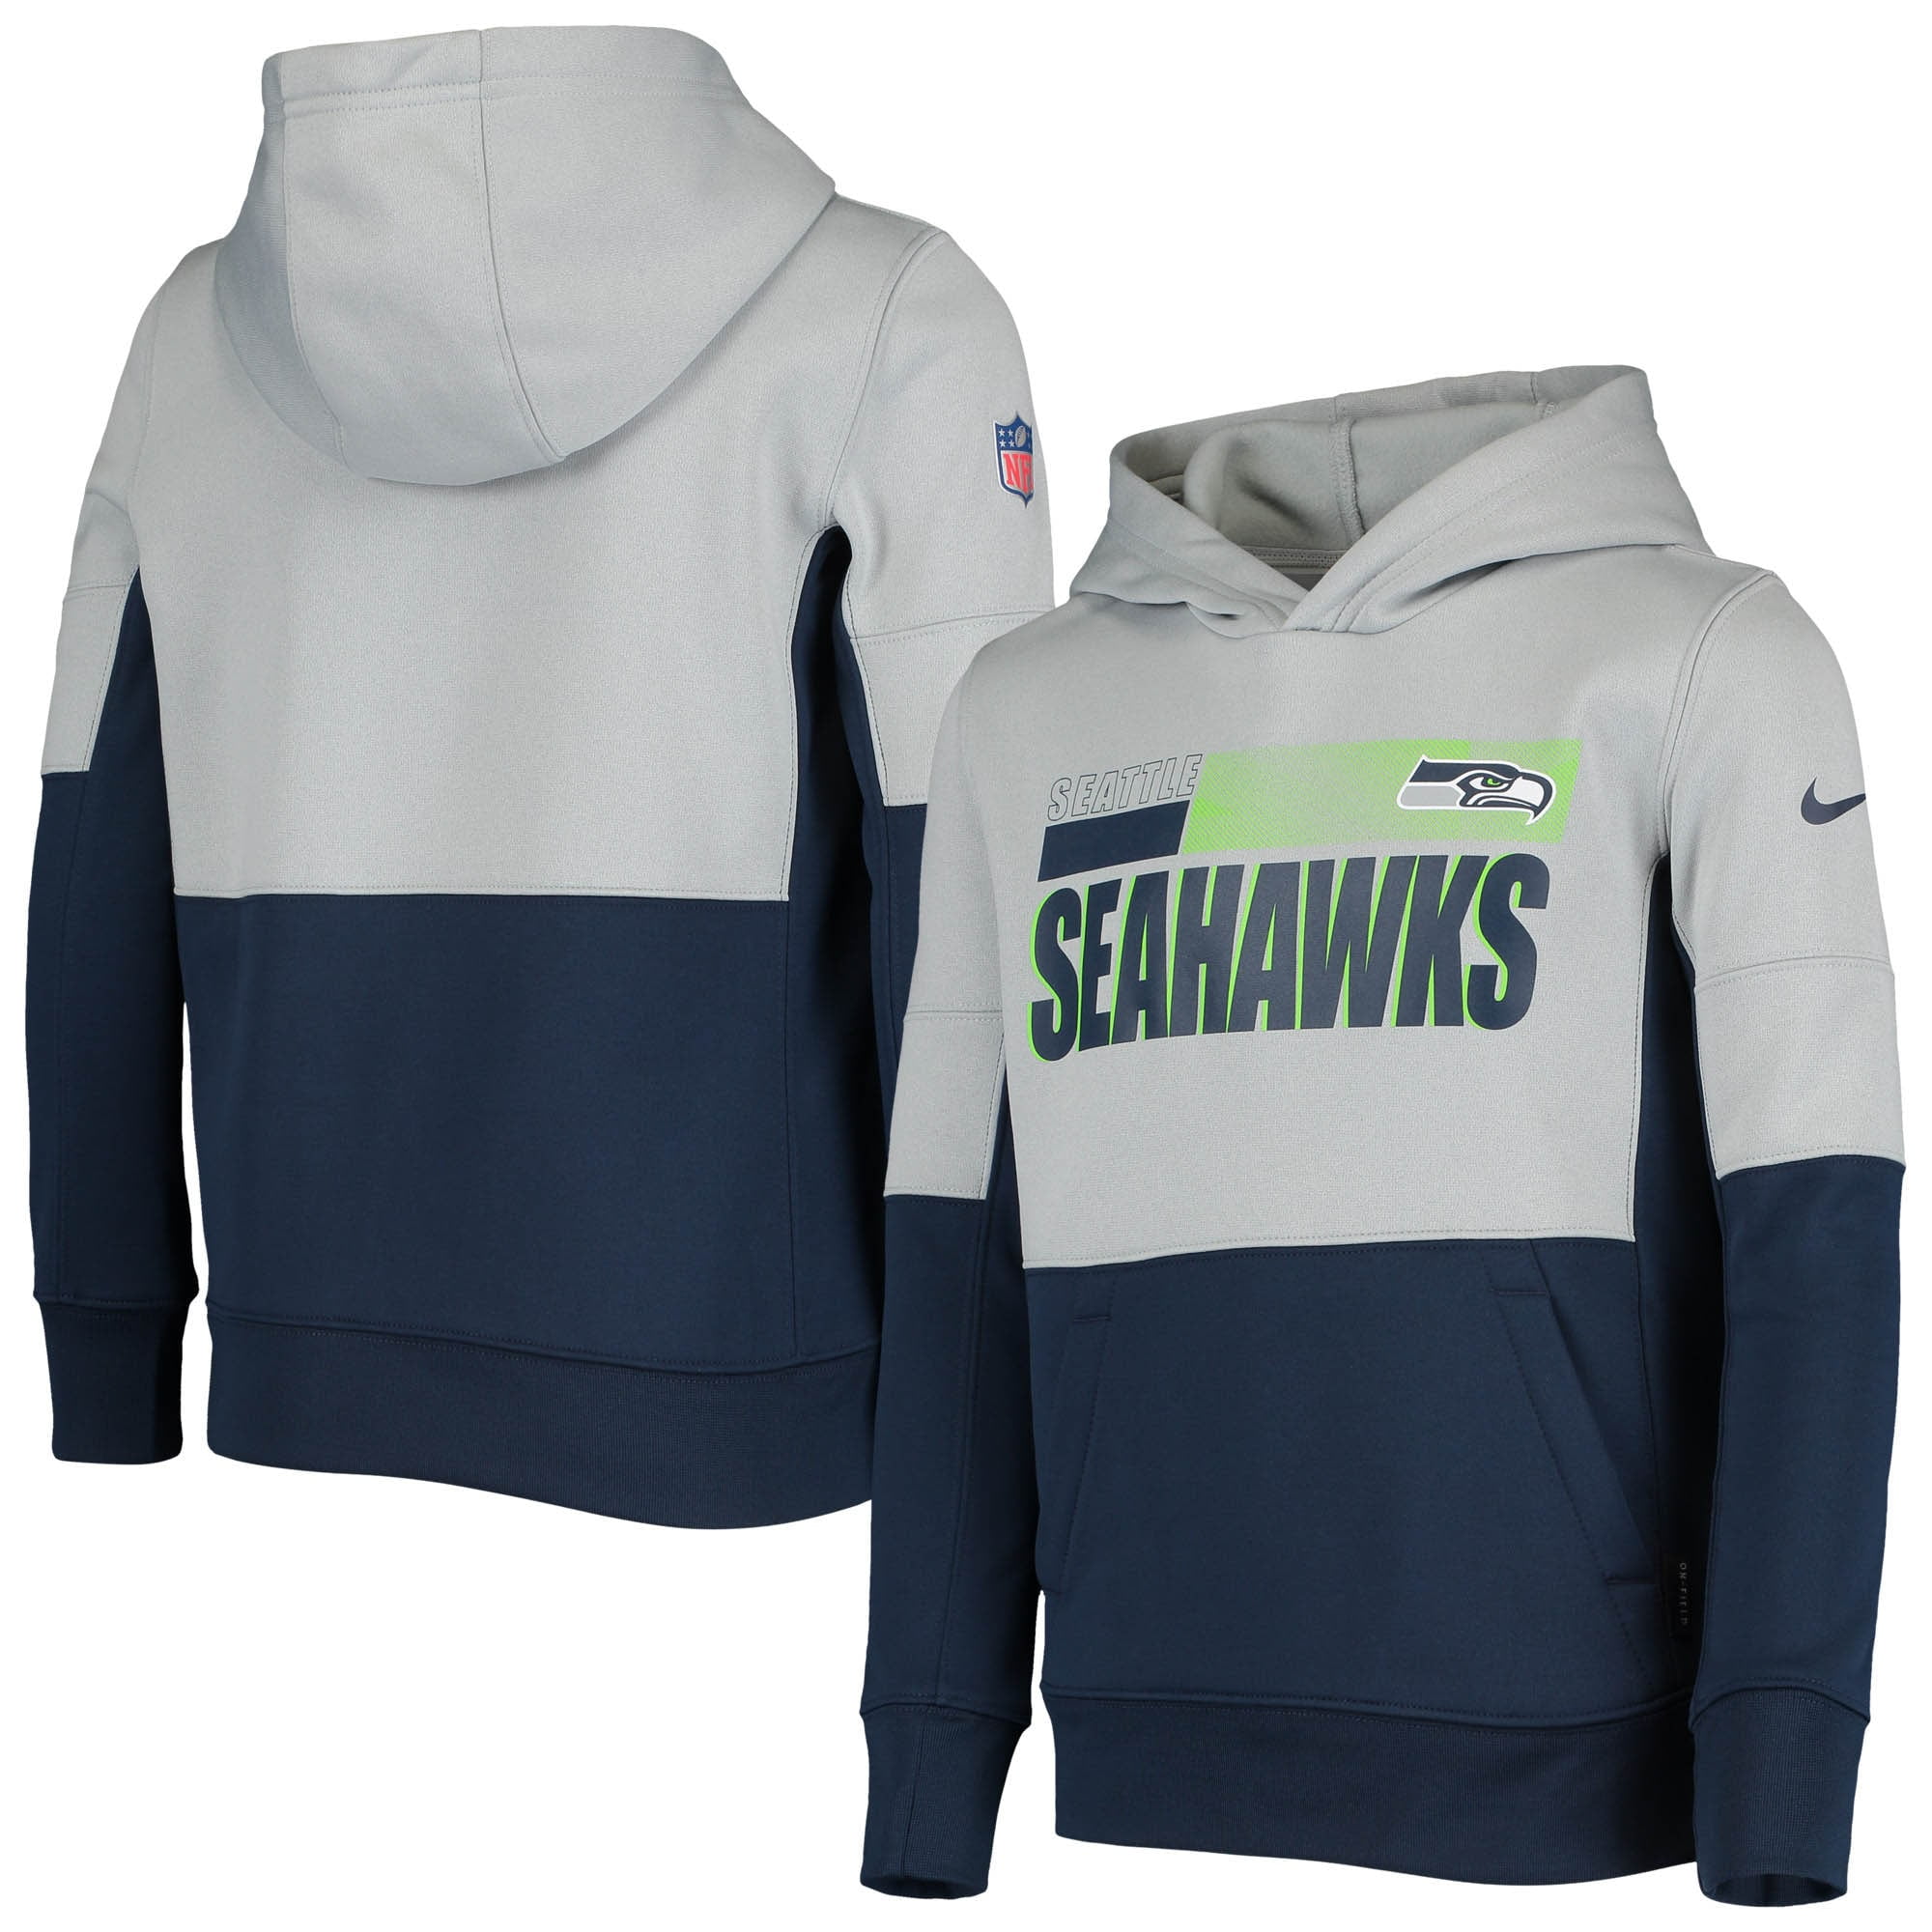 seahawks sweatshirt for kids